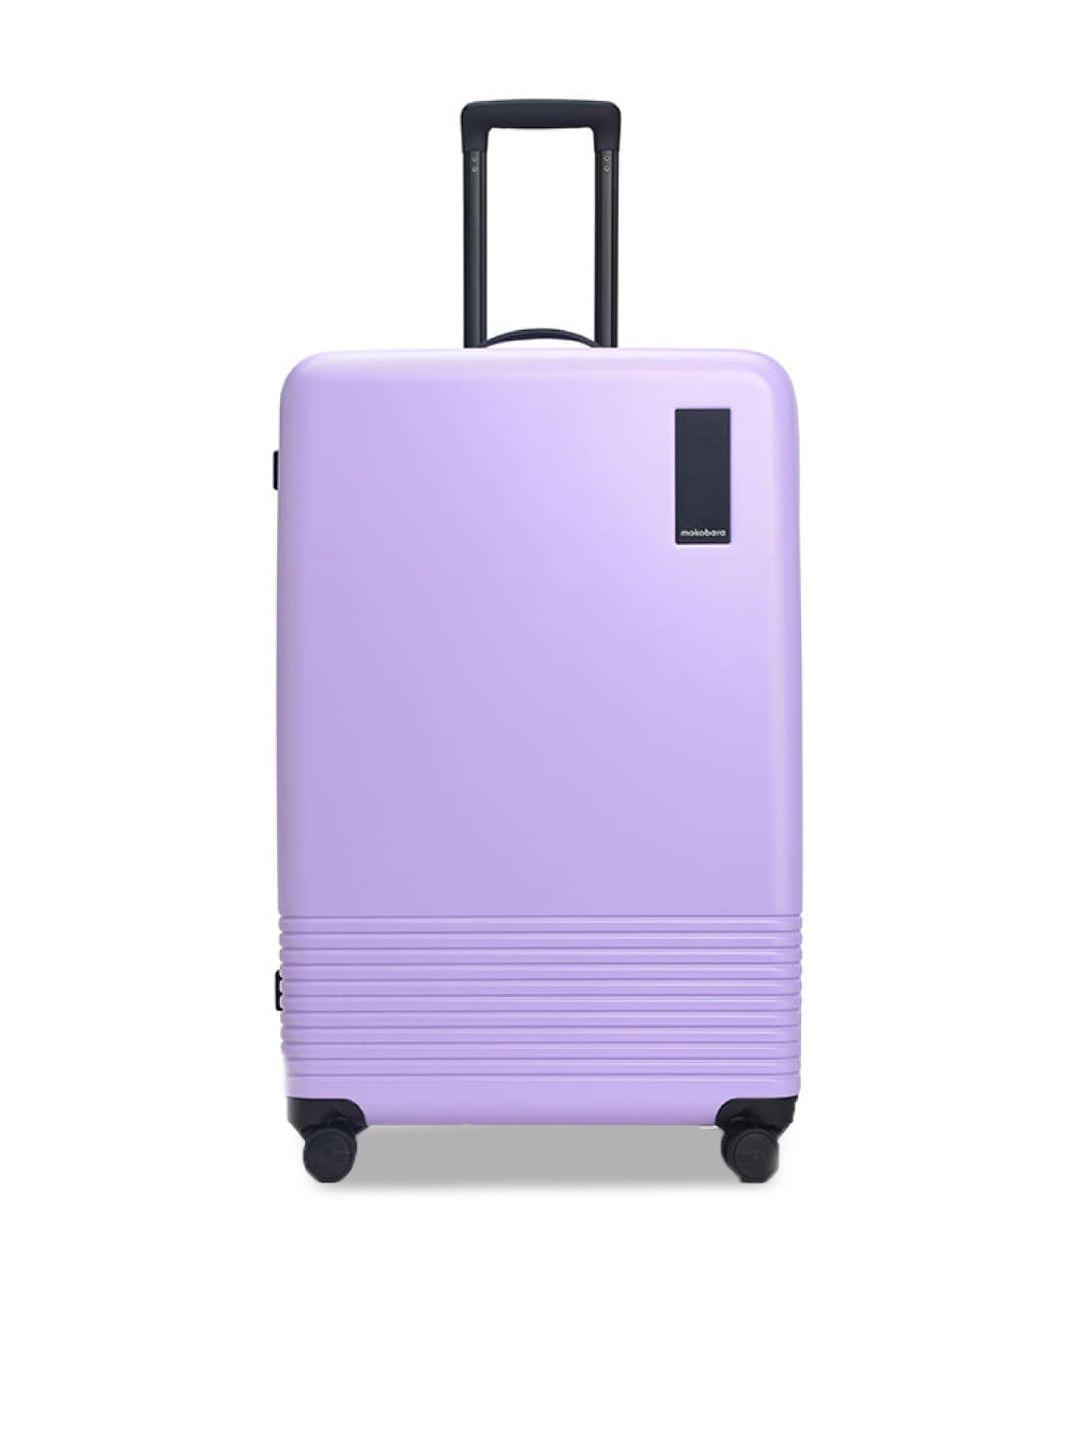 mokobara hard-sided large trolley suitcase